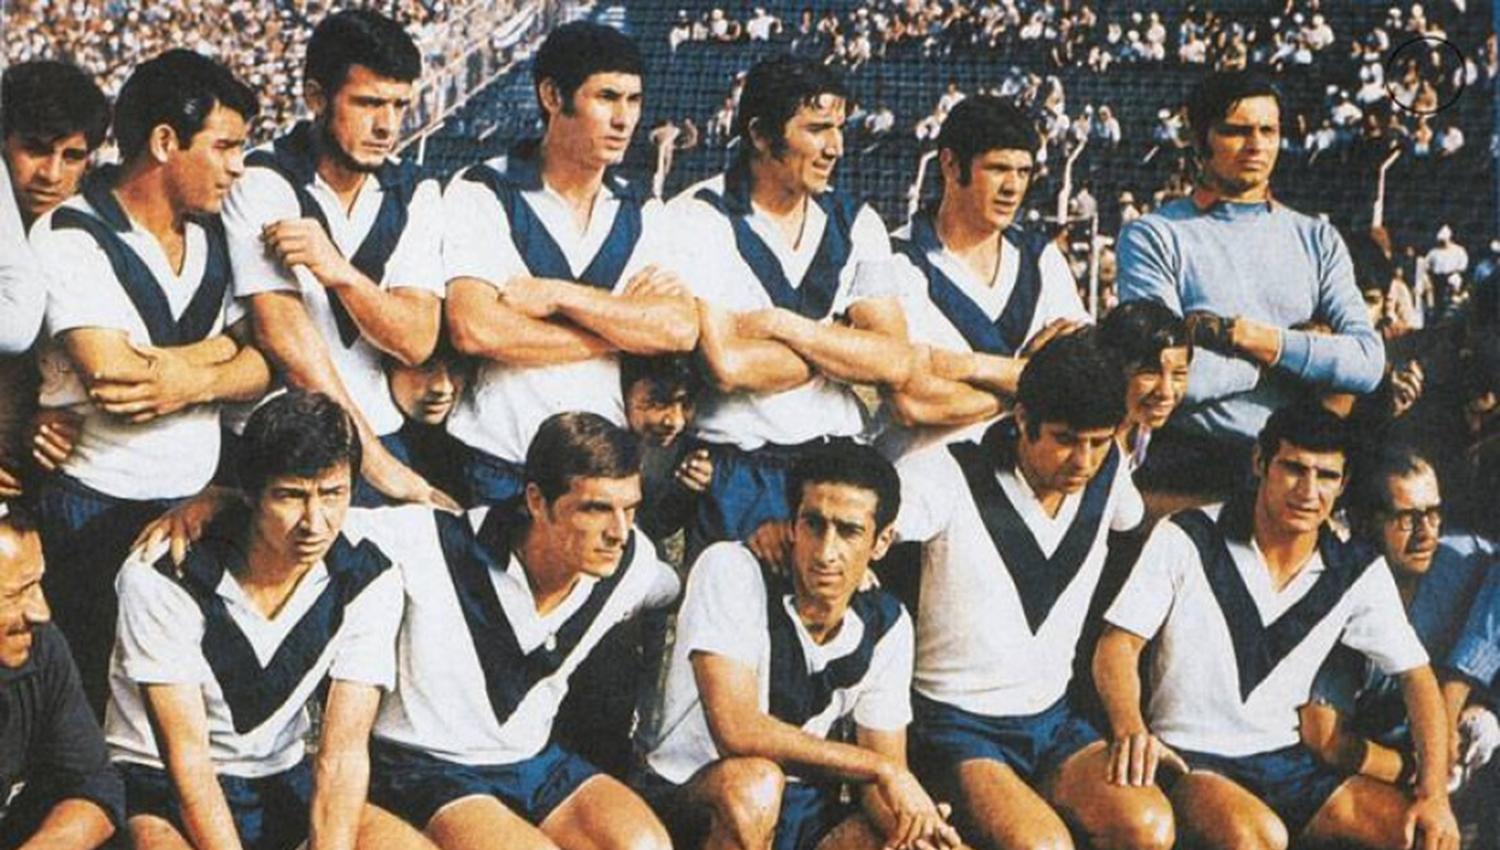 Con Vélez campeón en 1968. Pepe es el segundo desde la izquierda (parados).
FOTO ARCHIVO EL GRÁFICO. 